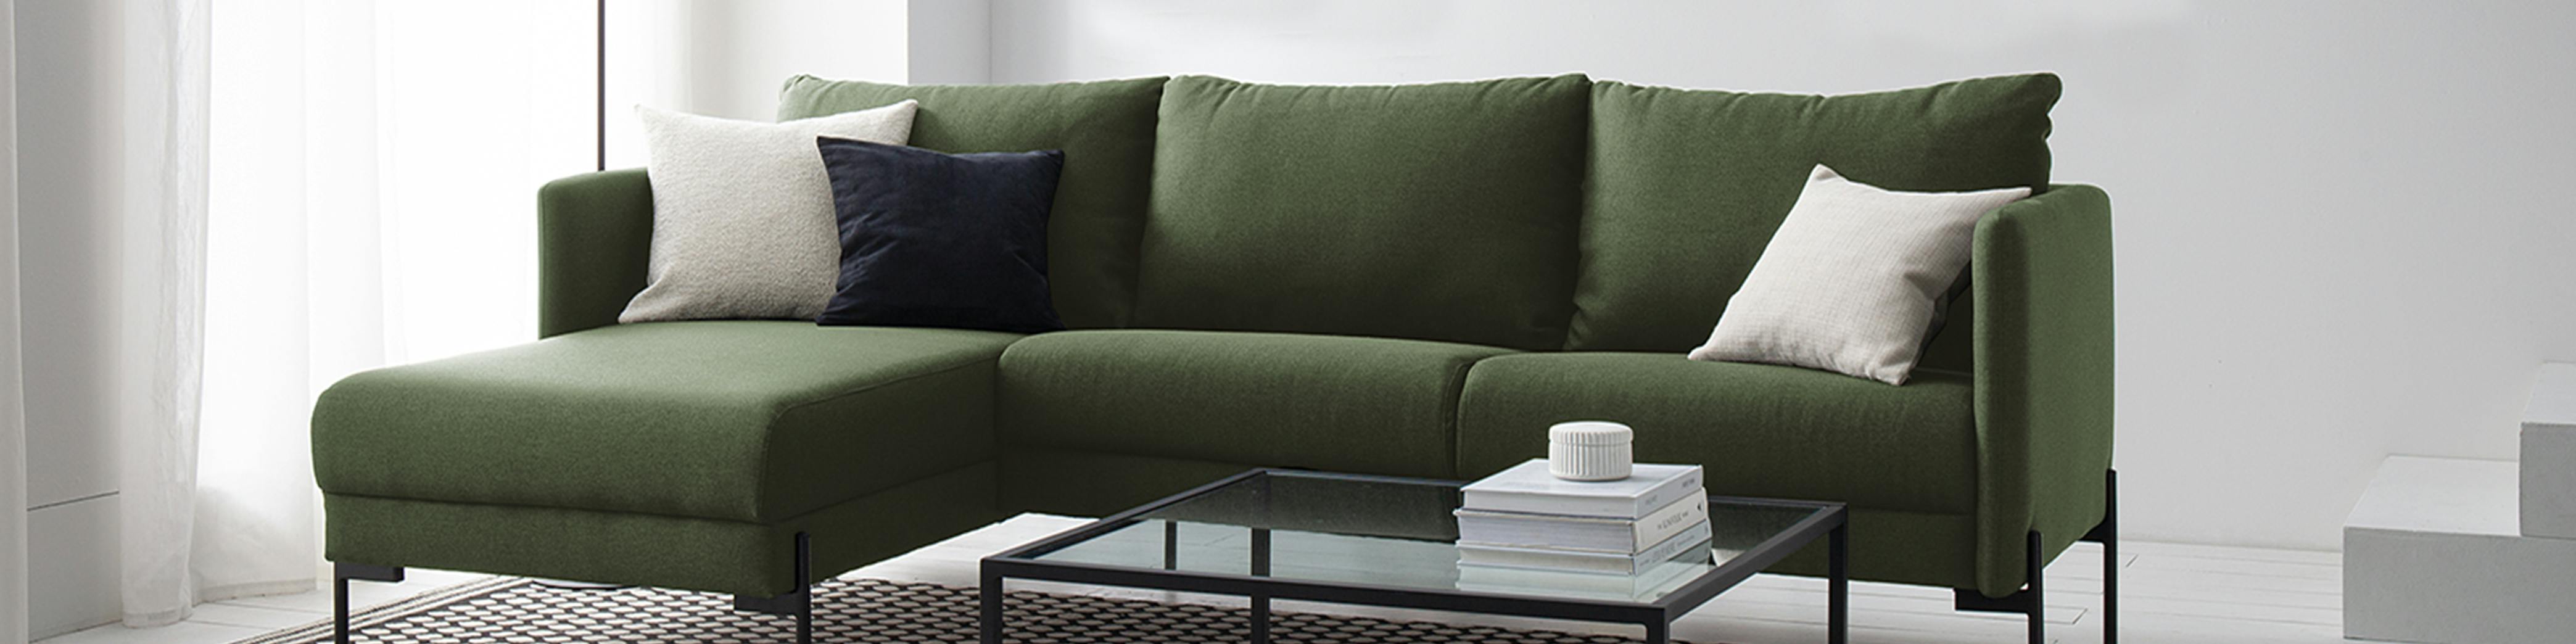 Grünes Sofa mit Longchair und Glas-Couchtisch in Wohnzimmer